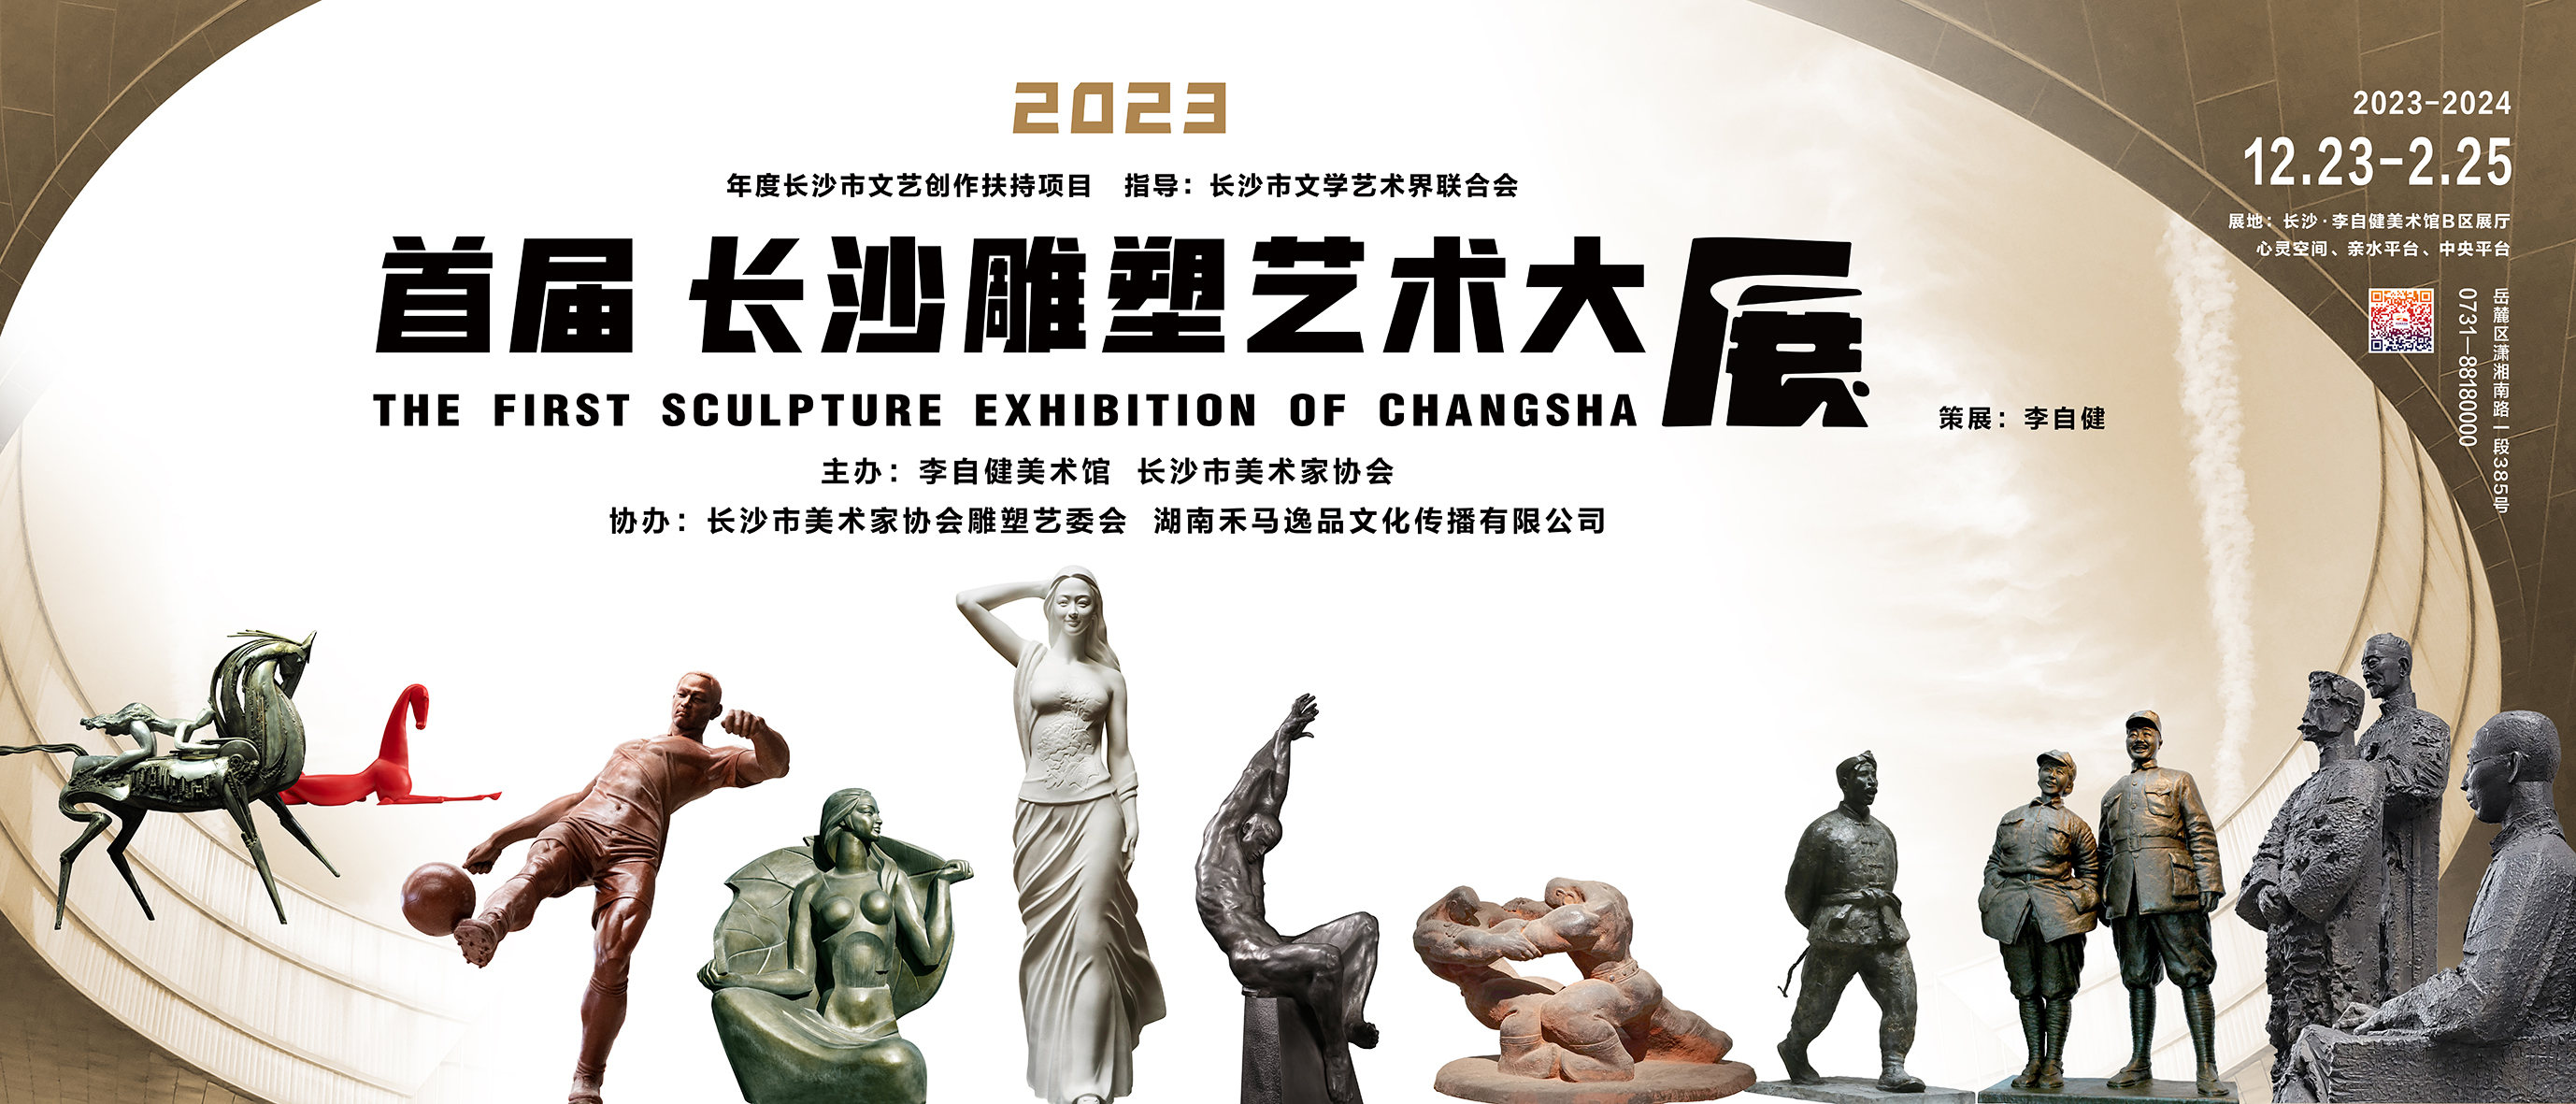 新展预告 | “2023首届长沙雕塑艺术大展” 12月23日下午3:30隆重开幕！